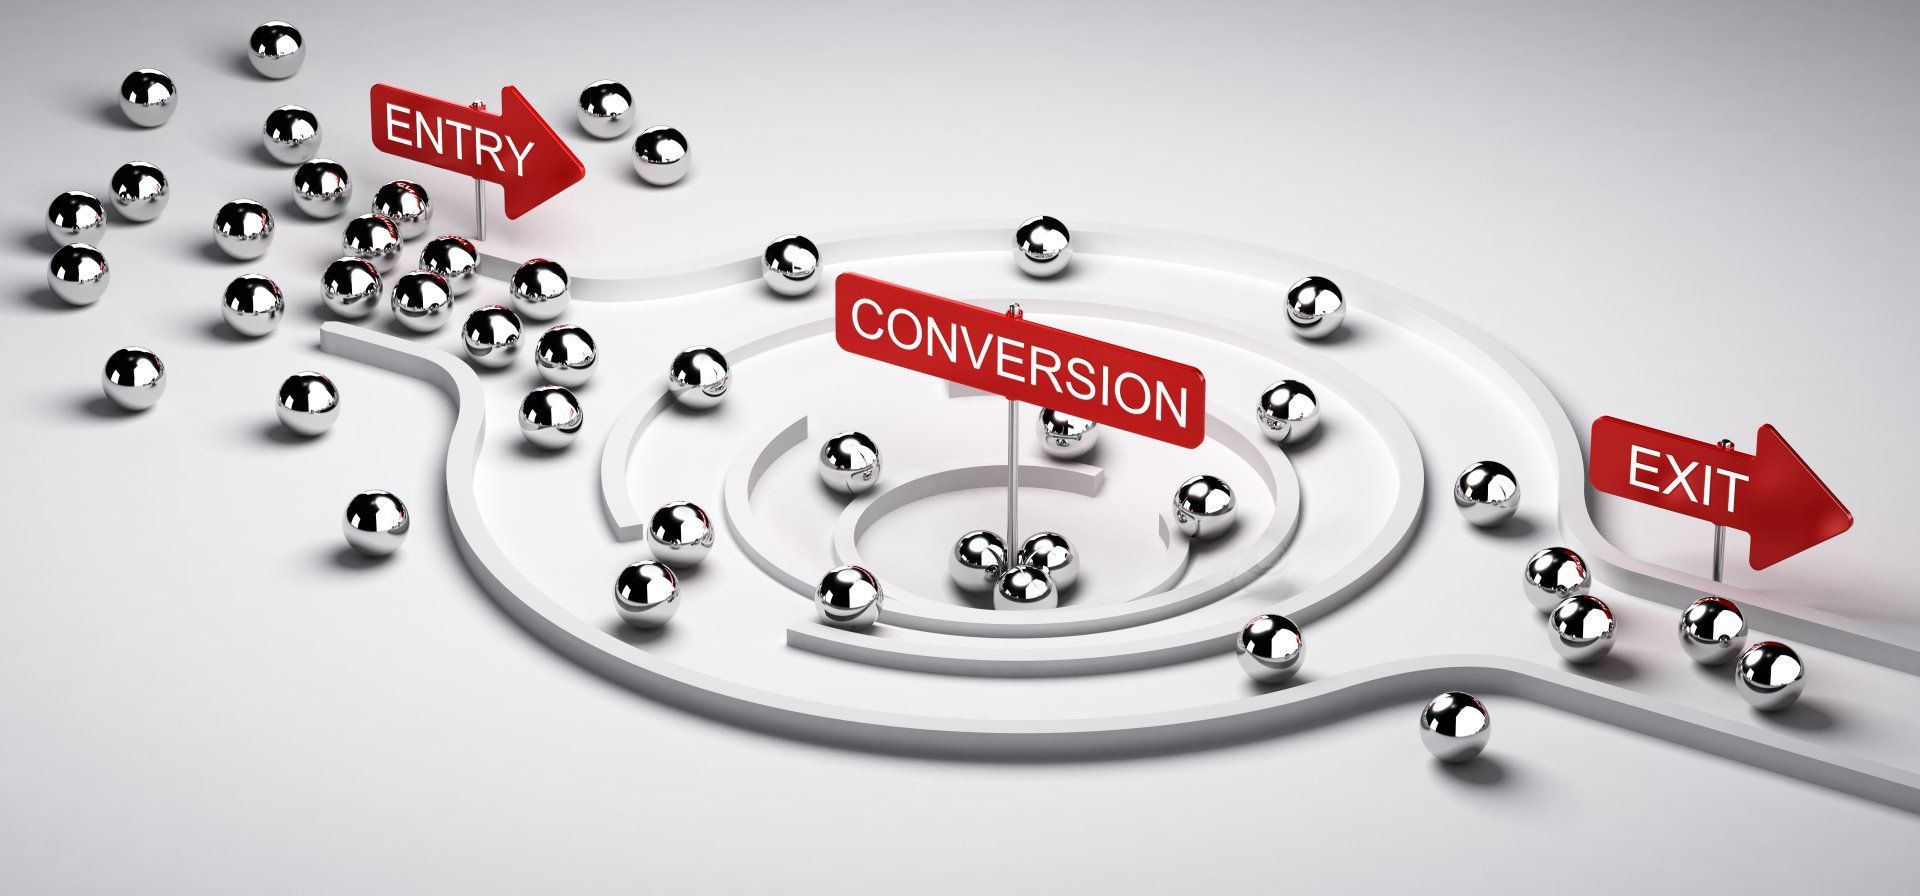 Ilustración 3d de un embudo de conversión con entrada y salida, concepto comercial o de marketing de clientes potenciales a relación de ventas